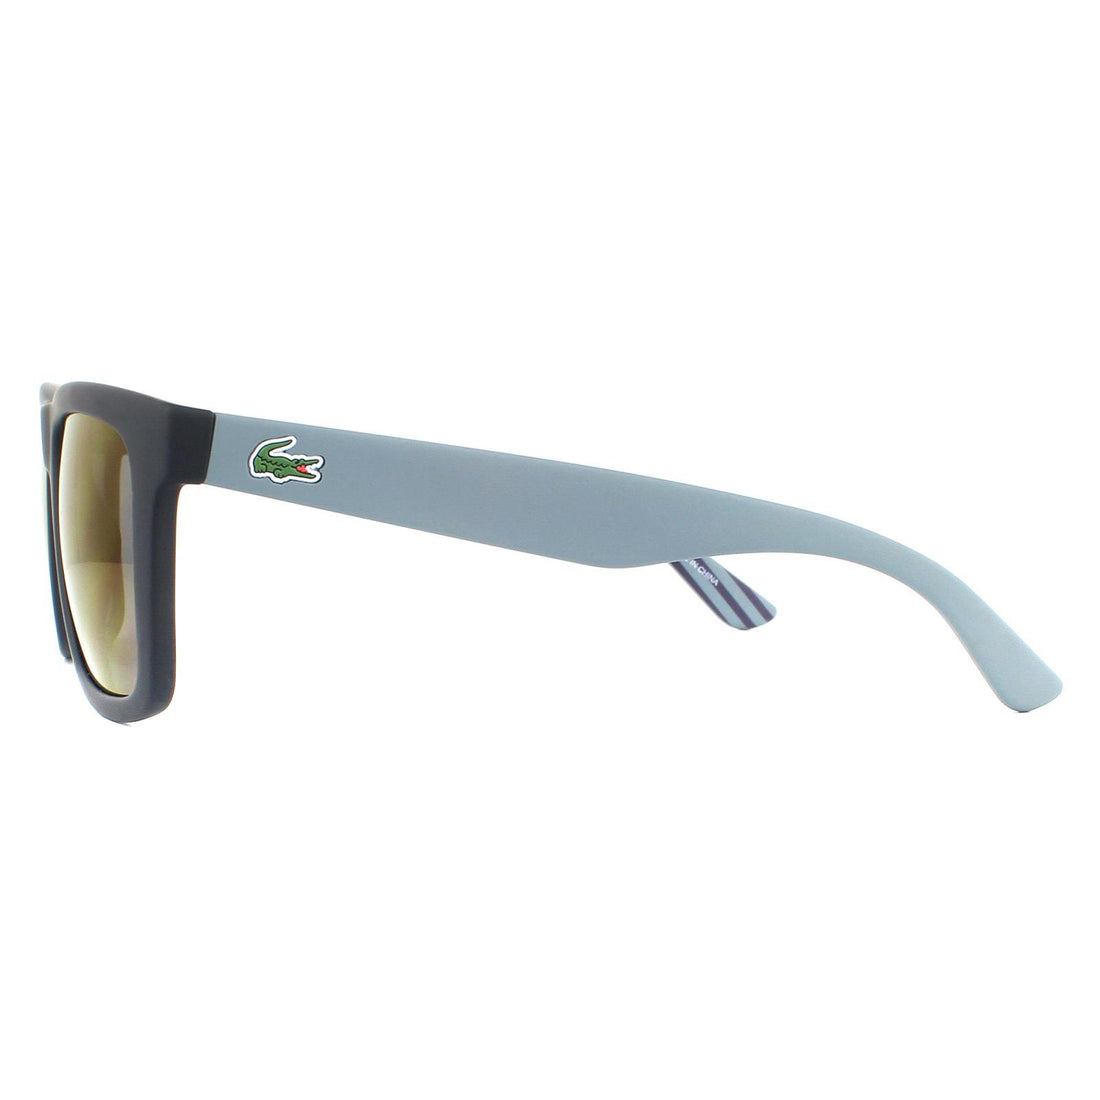 Lacoste Sunglasses L750S 414 Matte Blue Navy Blue